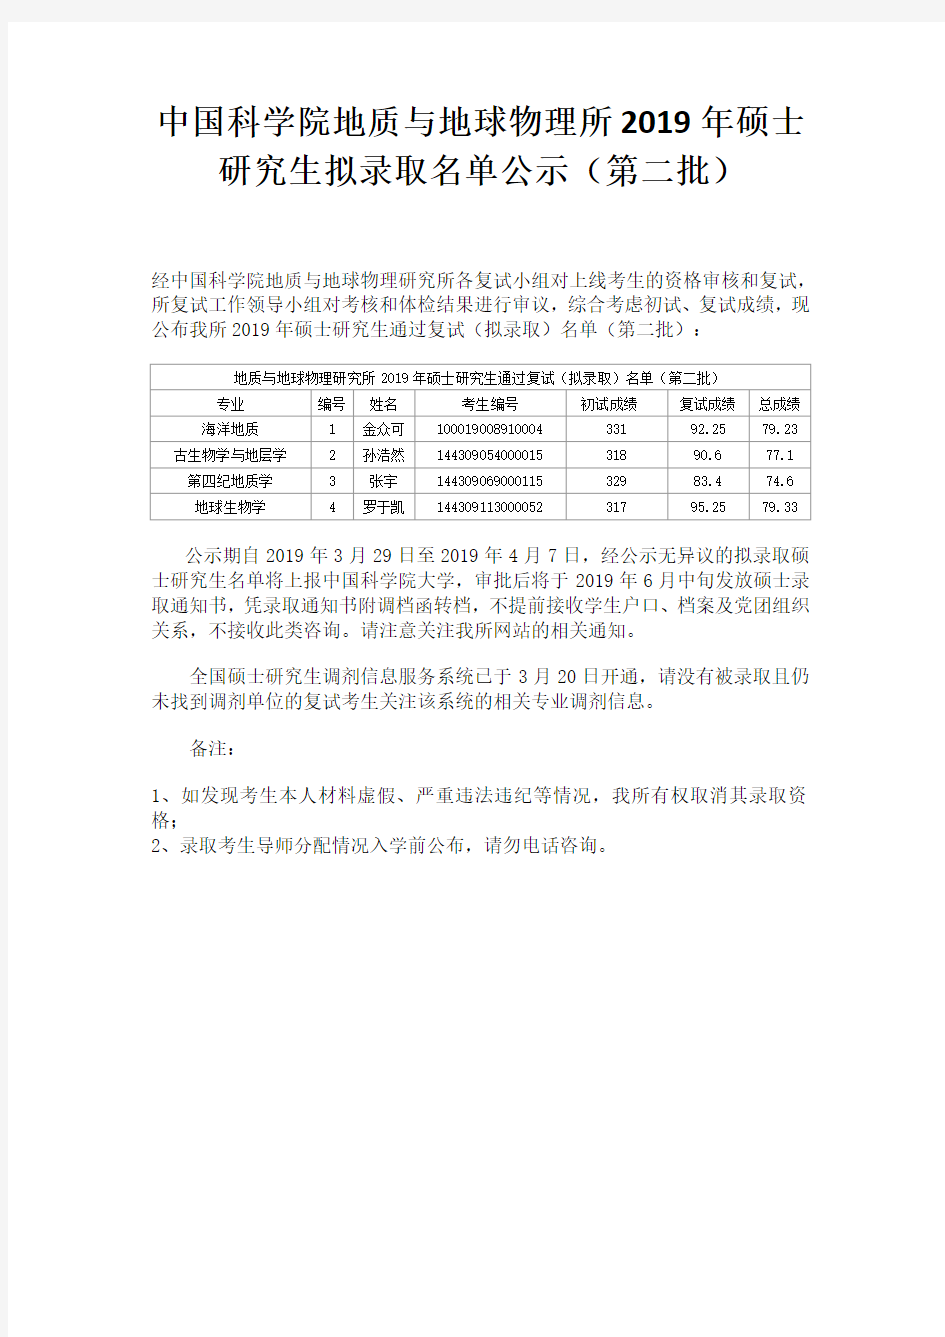 中国科学院地质与地球物理所2019年硕士研究生拟录取名单公示(第二批)